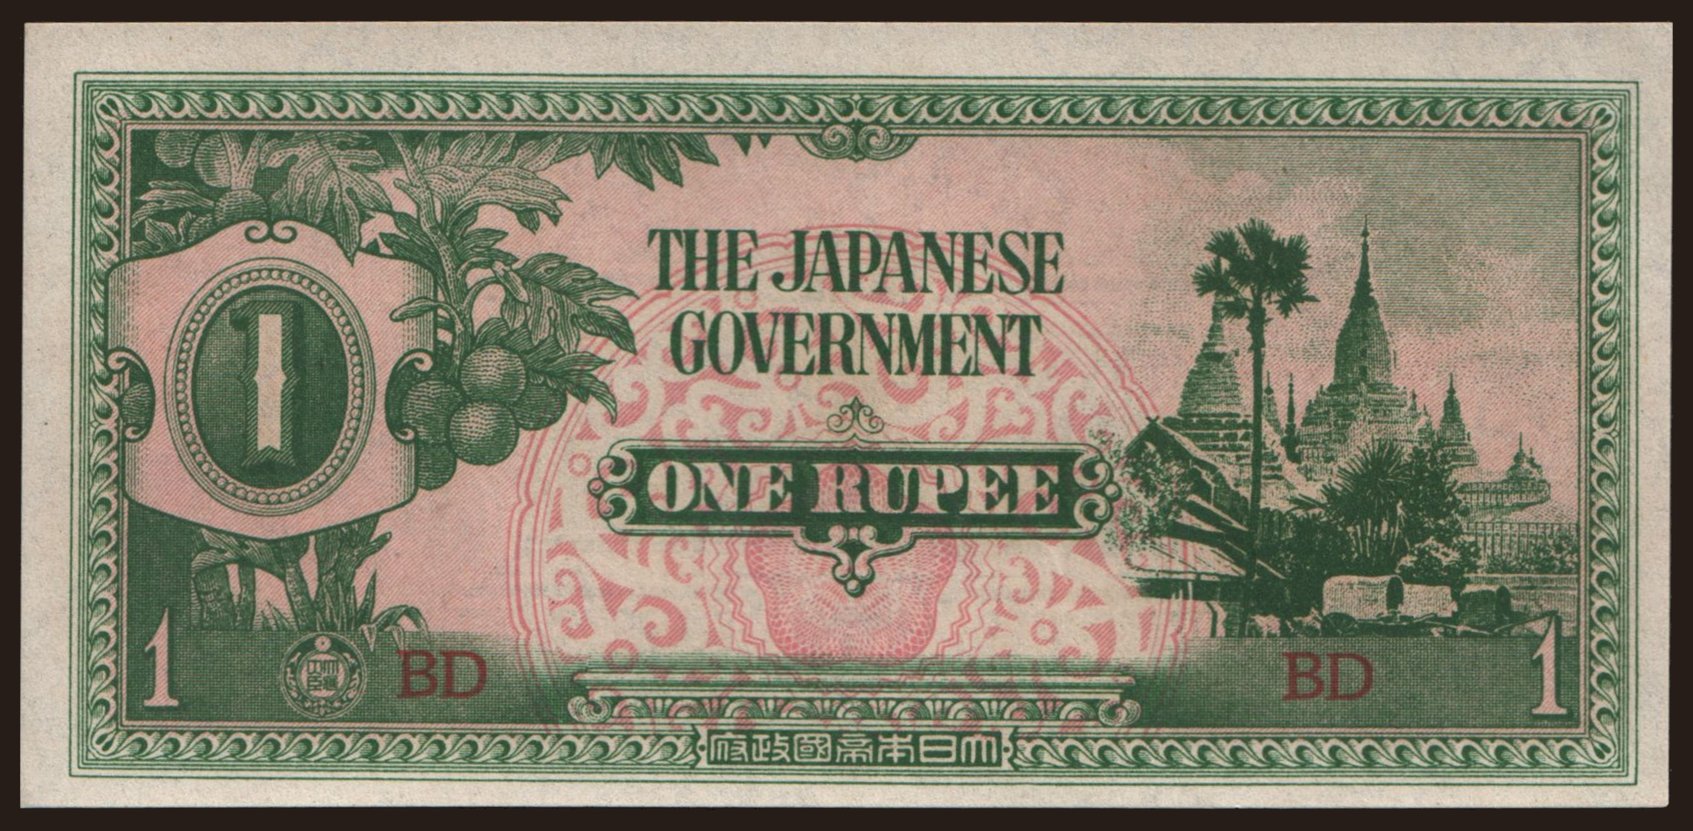 1 rupee, 1942